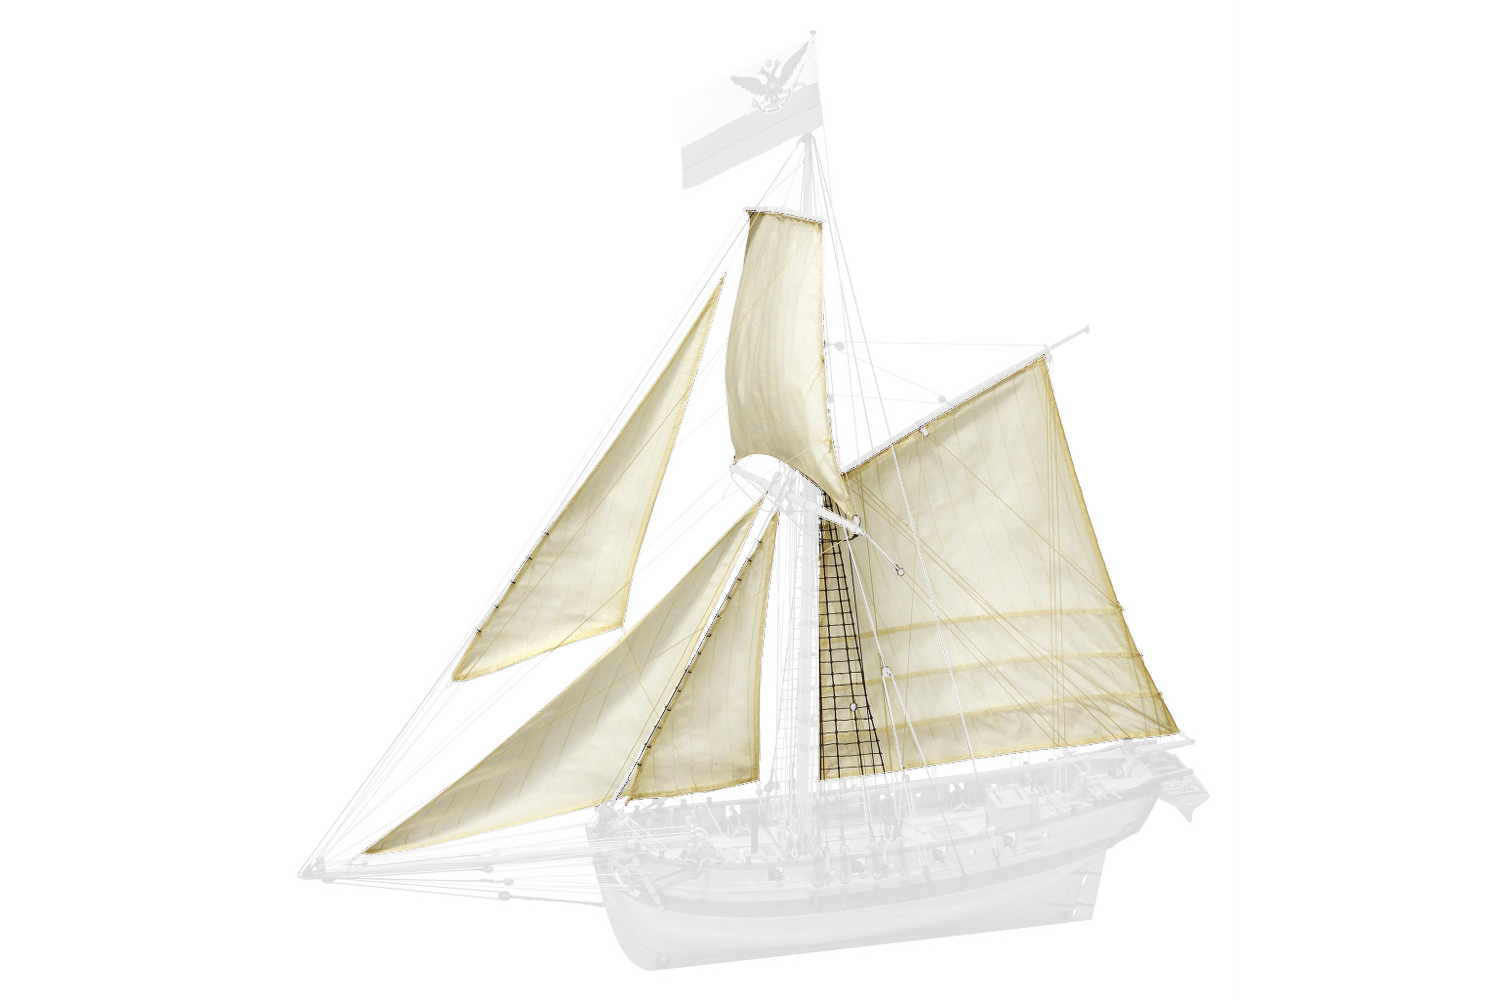 Sails for Tender "Avos"